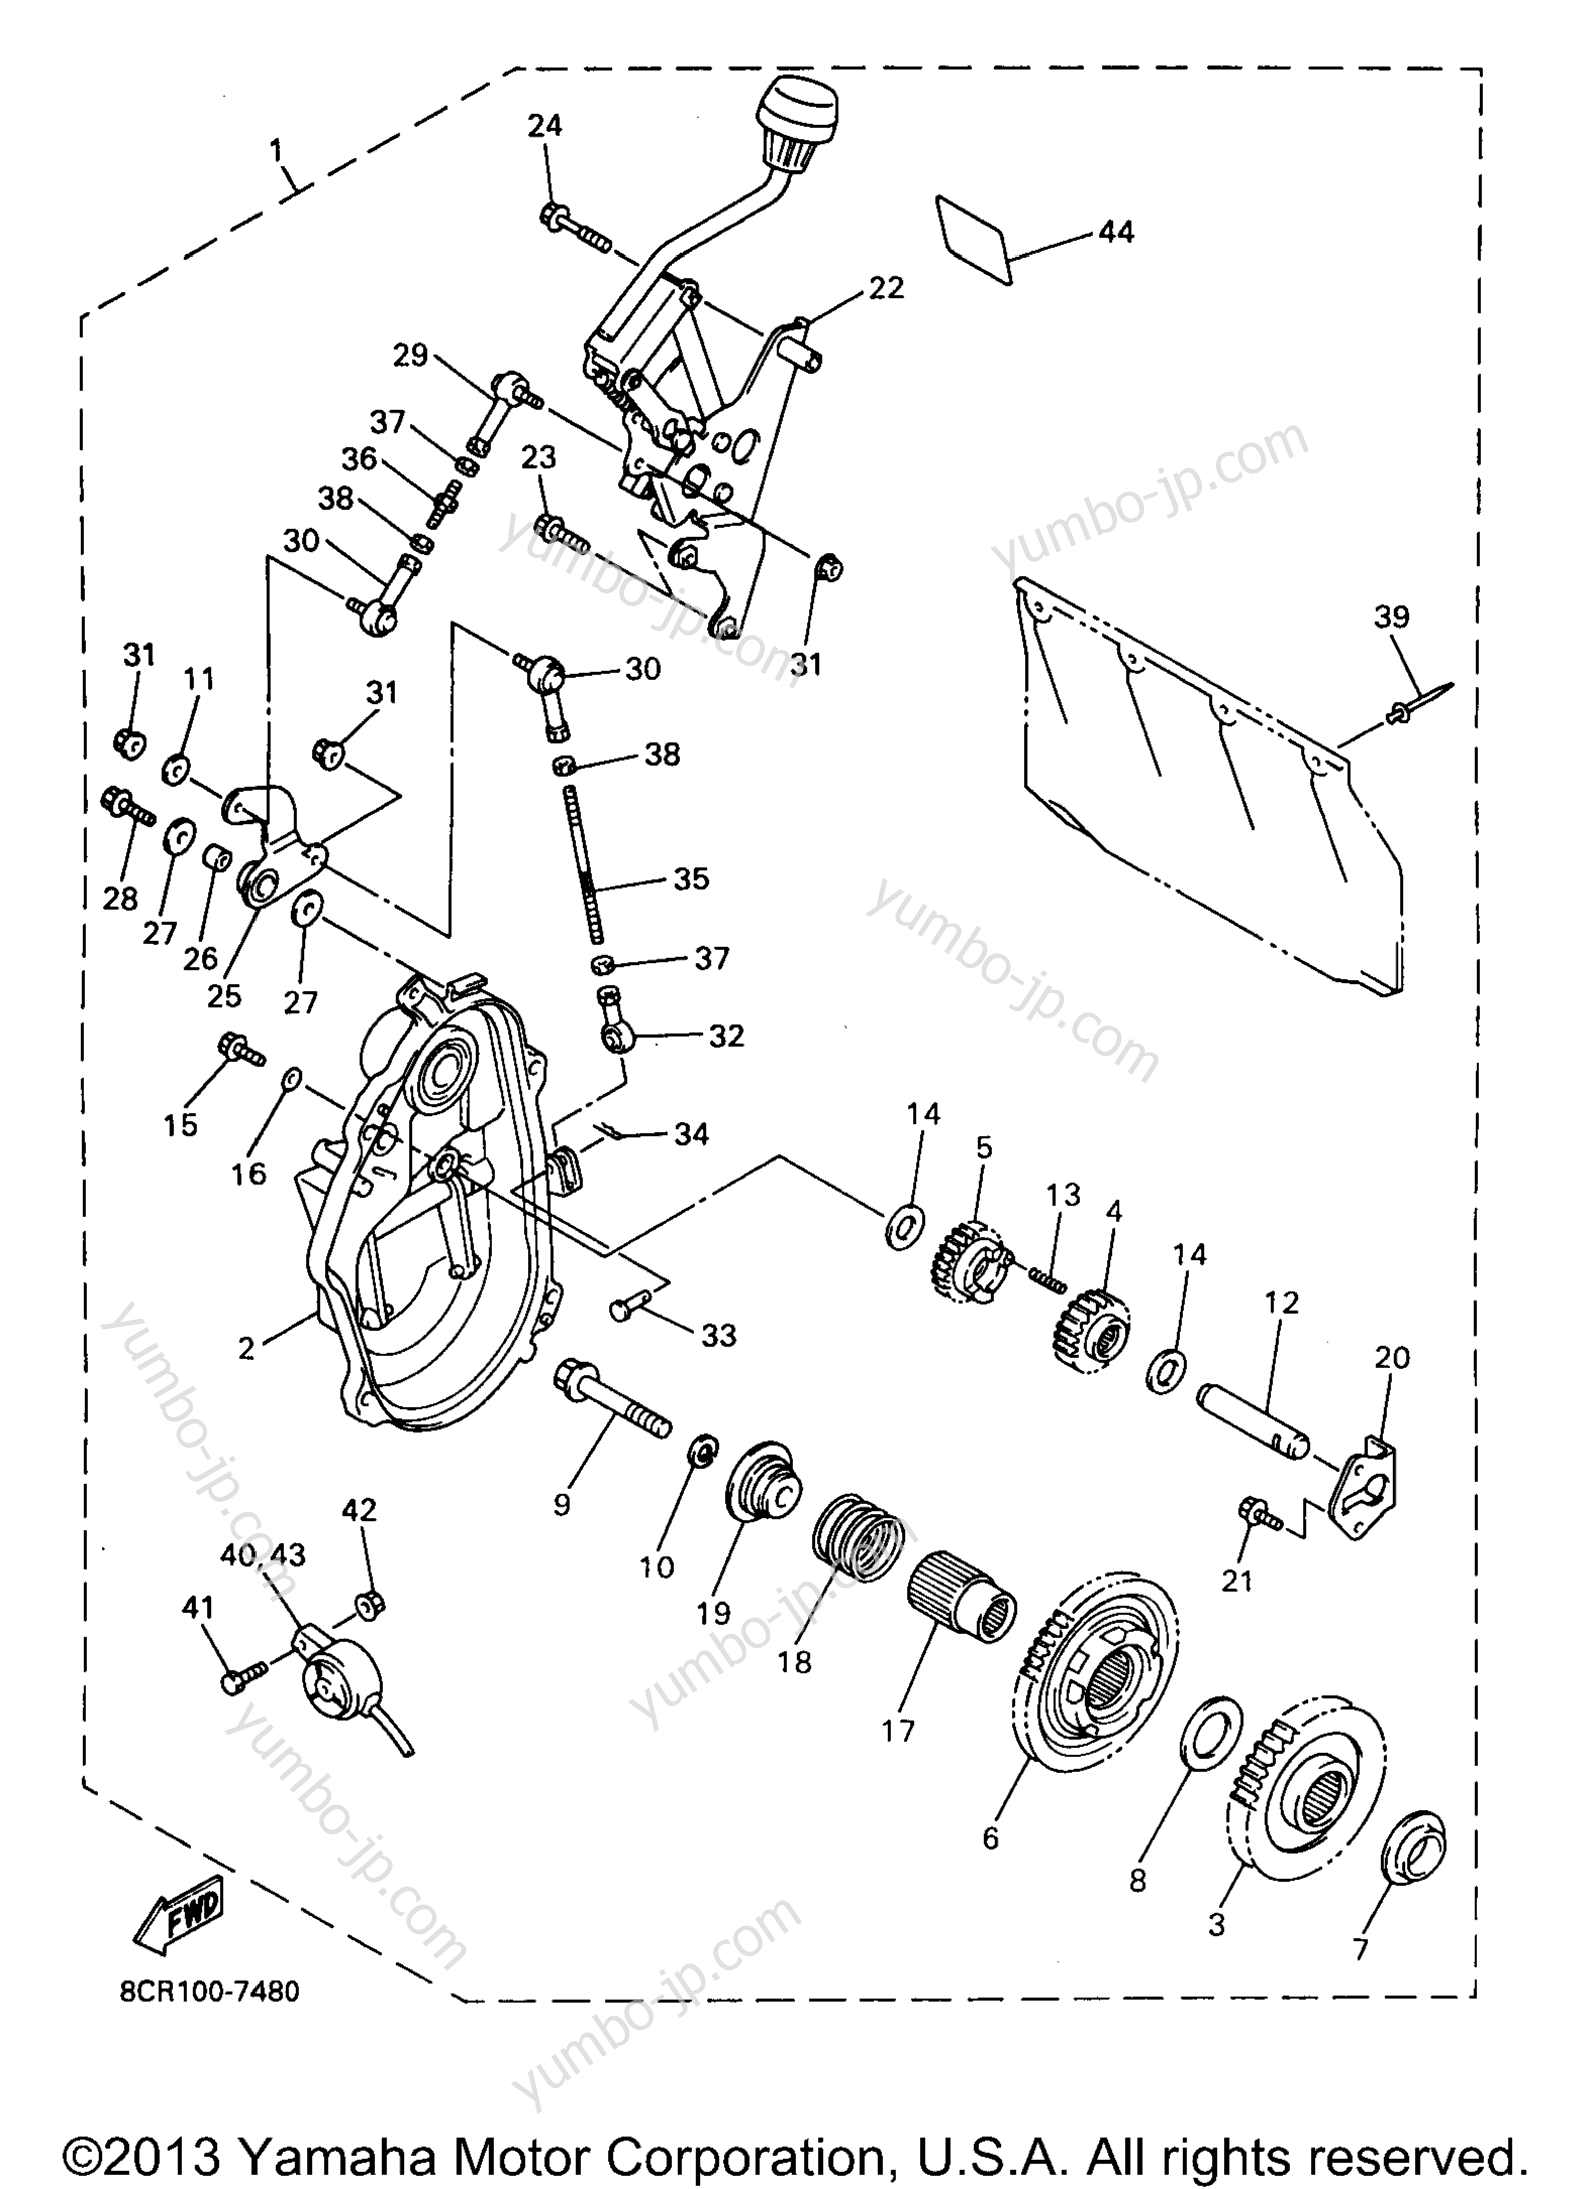 Alternate Reverse Gear for snowmobiles YAMAHA VMAX 500 XTC (ELEC START) (VX500XTCEA) 1997 year